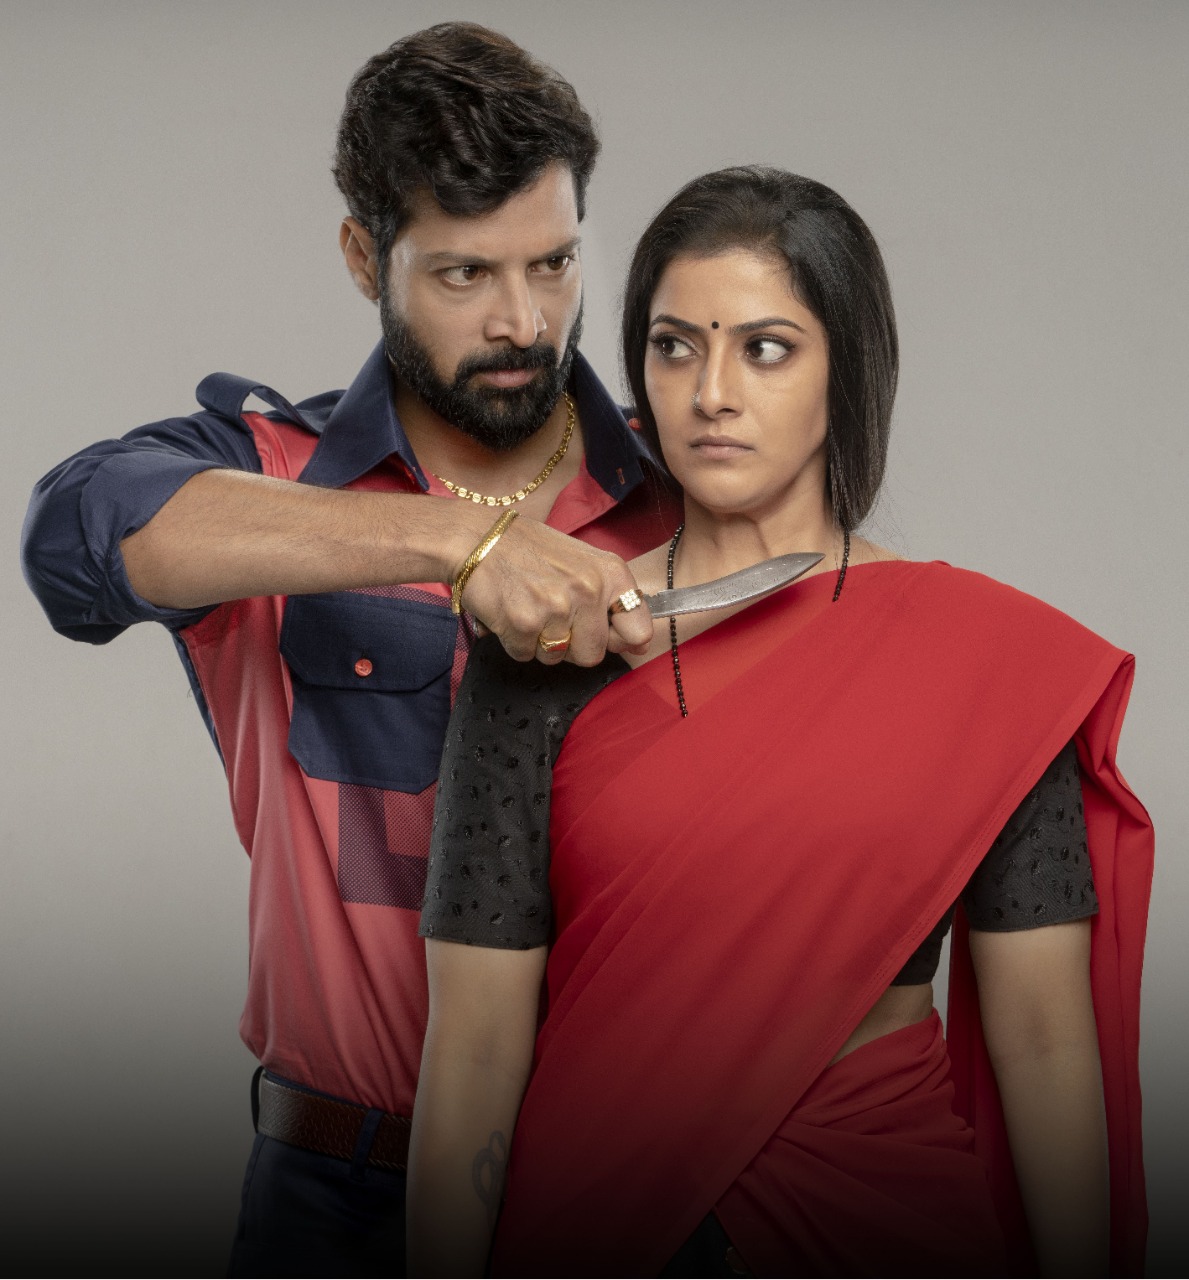 வரலட்சுமி சரத்குமார் நடிக்கும் புதிய படம் 'கொன்றால் பாவம்'..! |  Tamil2daynews